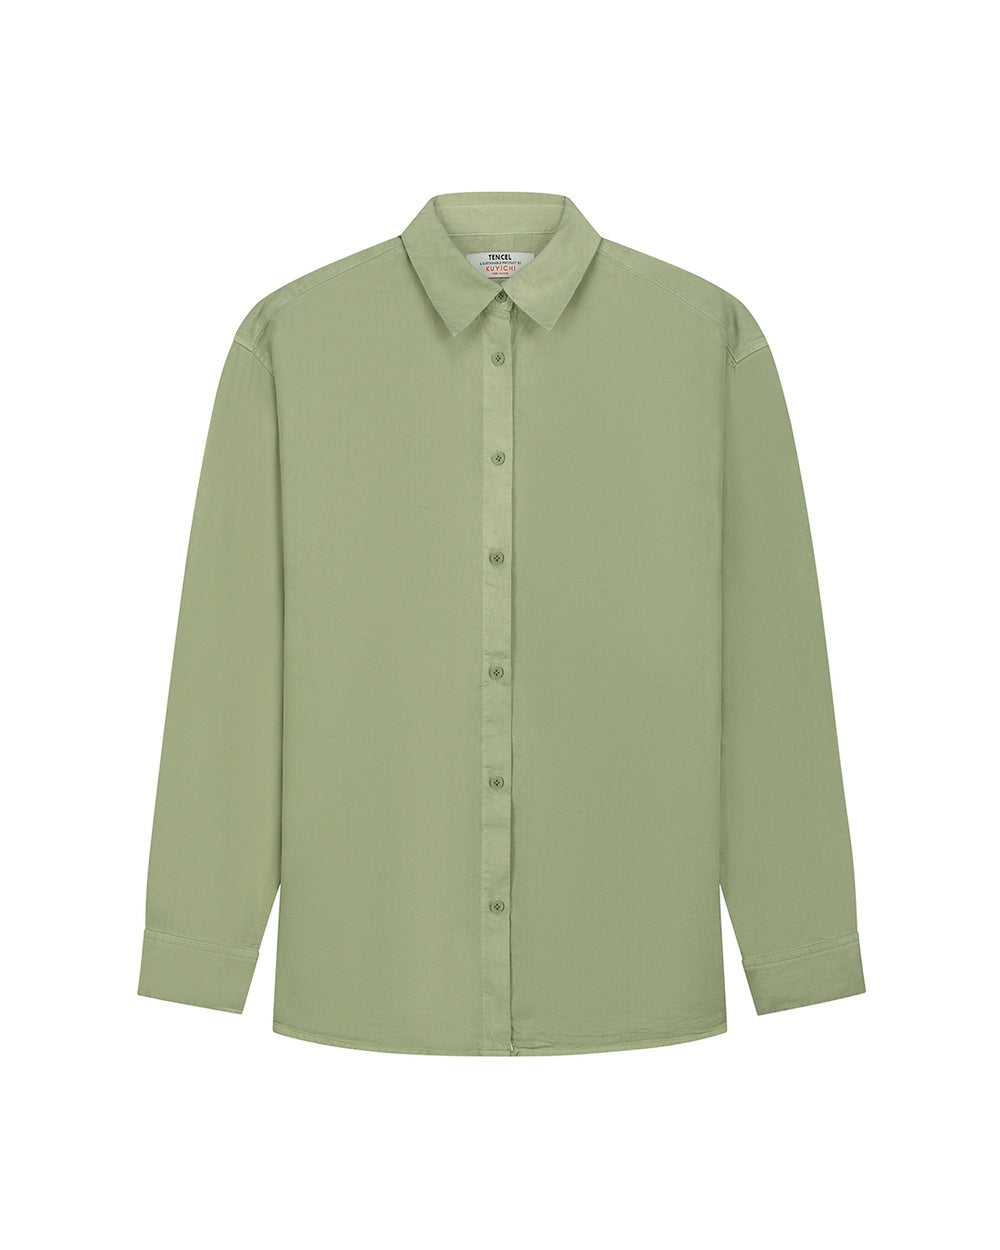 SADIE Sage Green Shirt